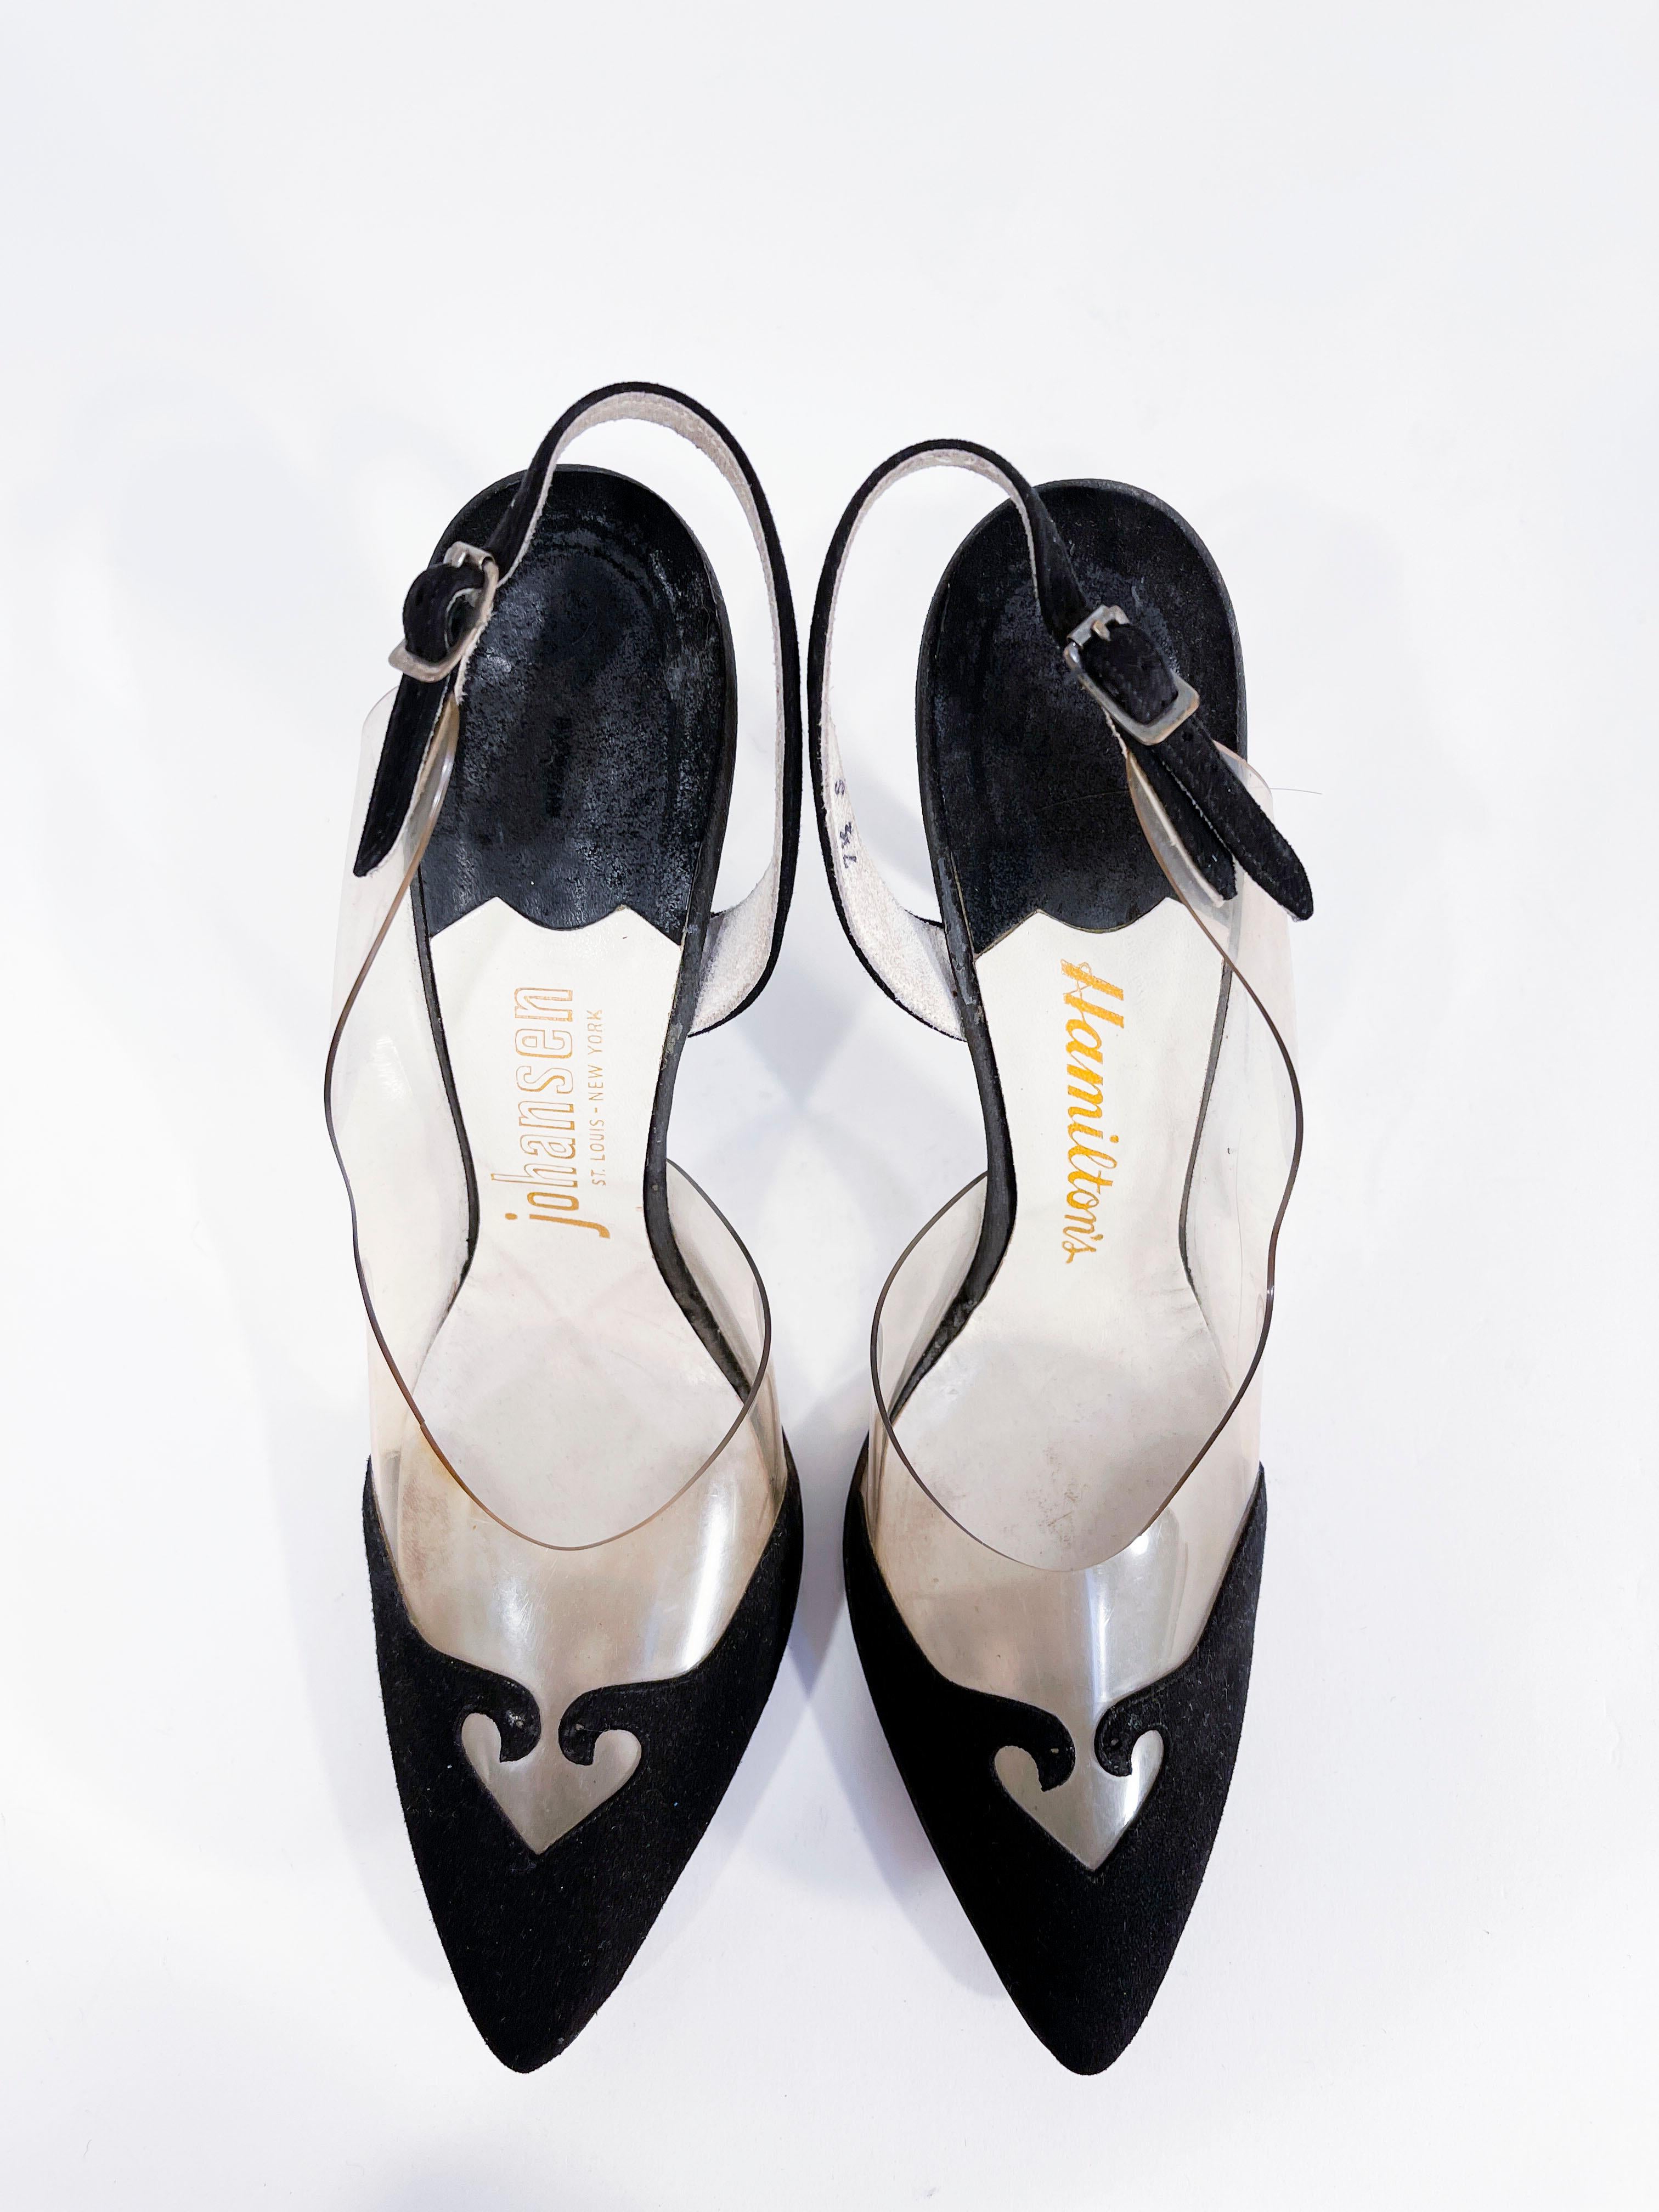 1960 heels